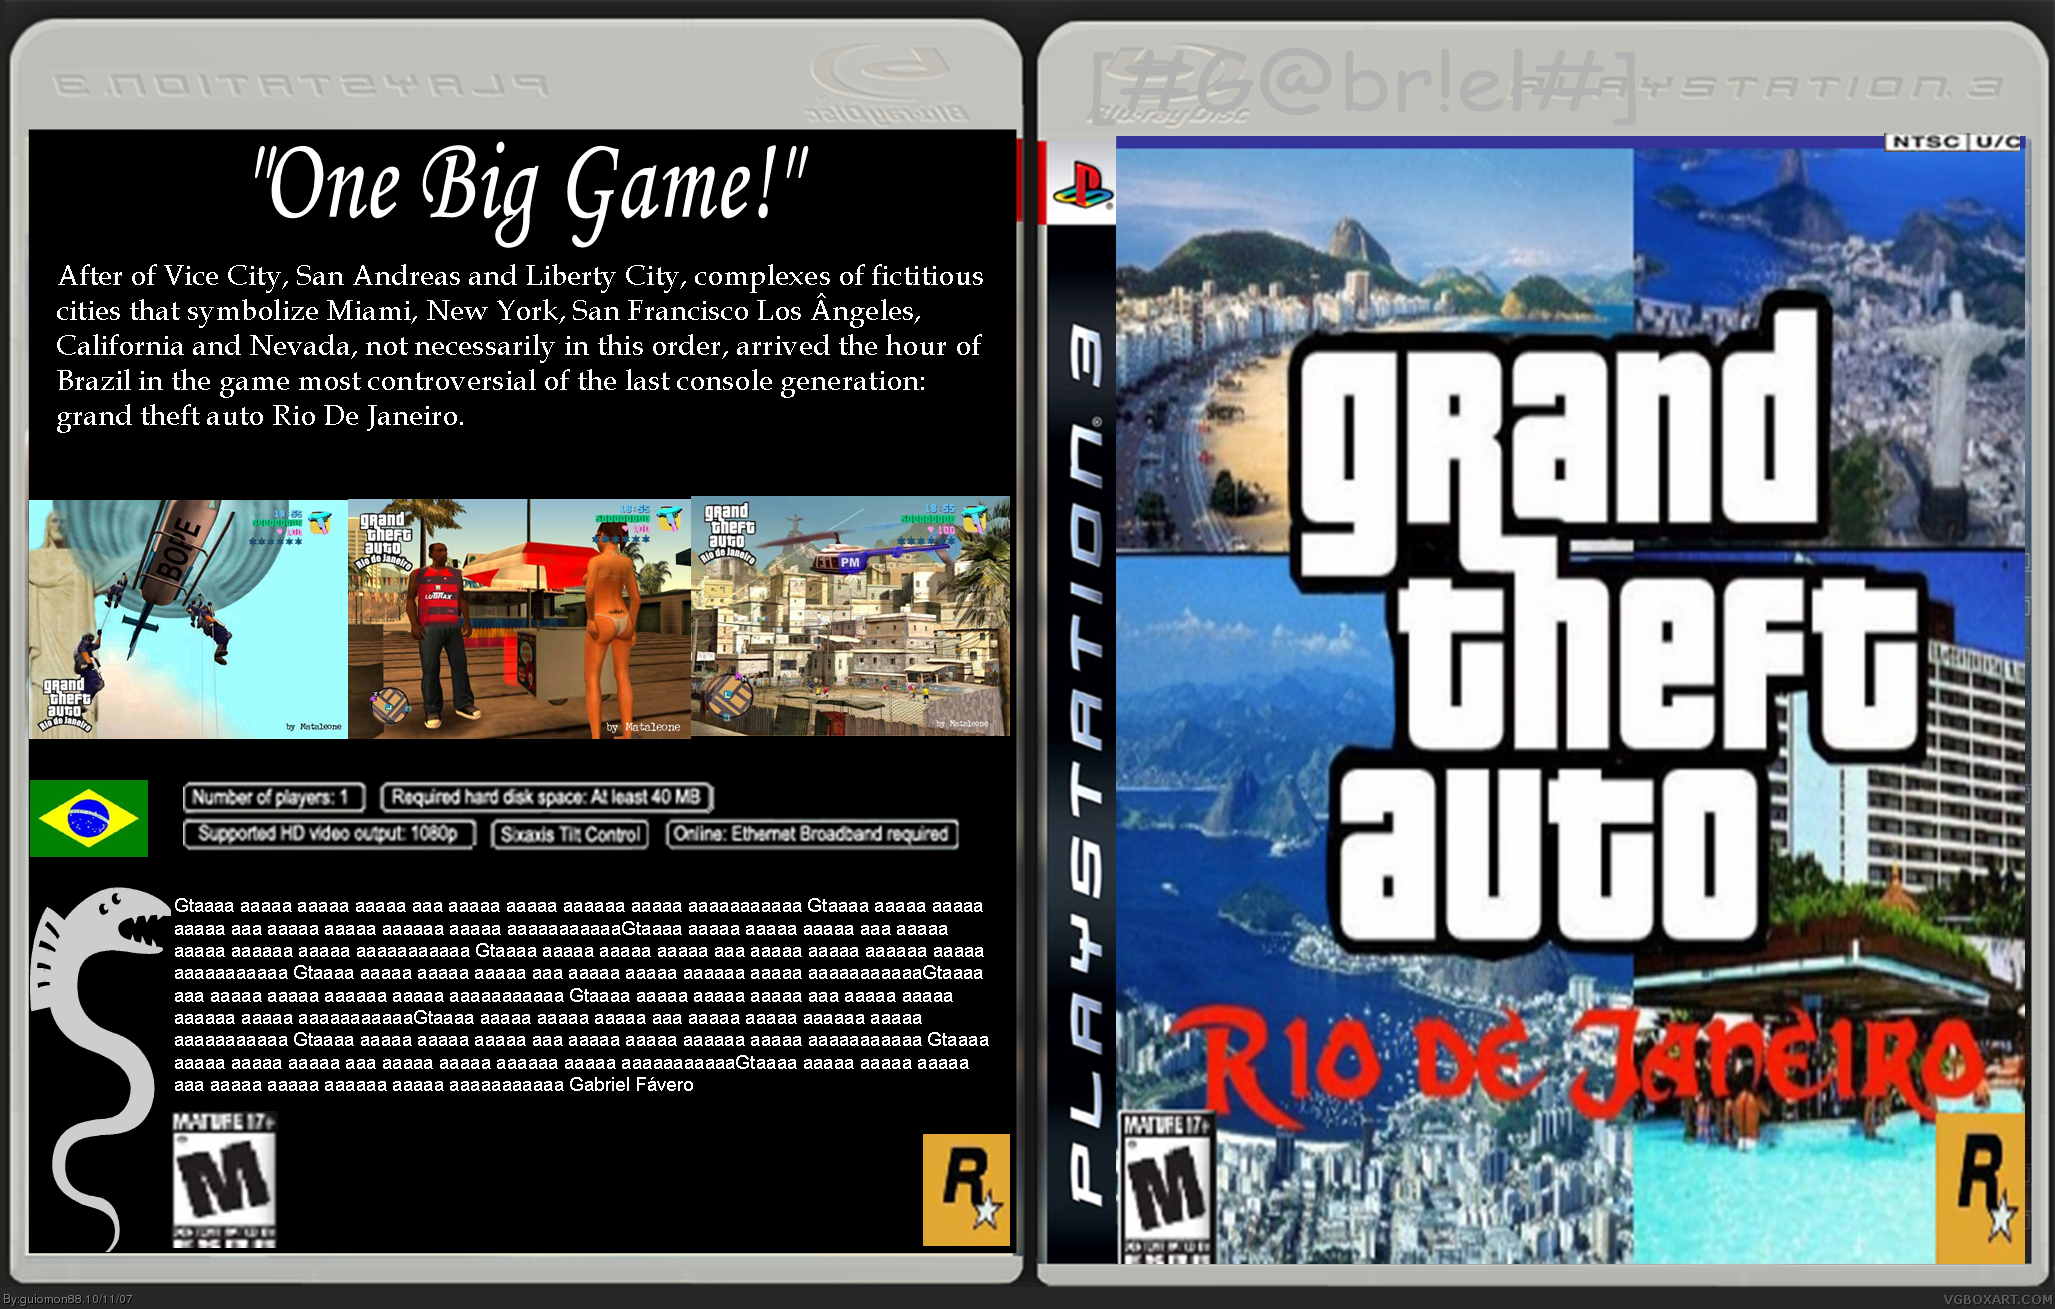 Grand Theft Auto: Rio de Janeiro 2.0 box cover